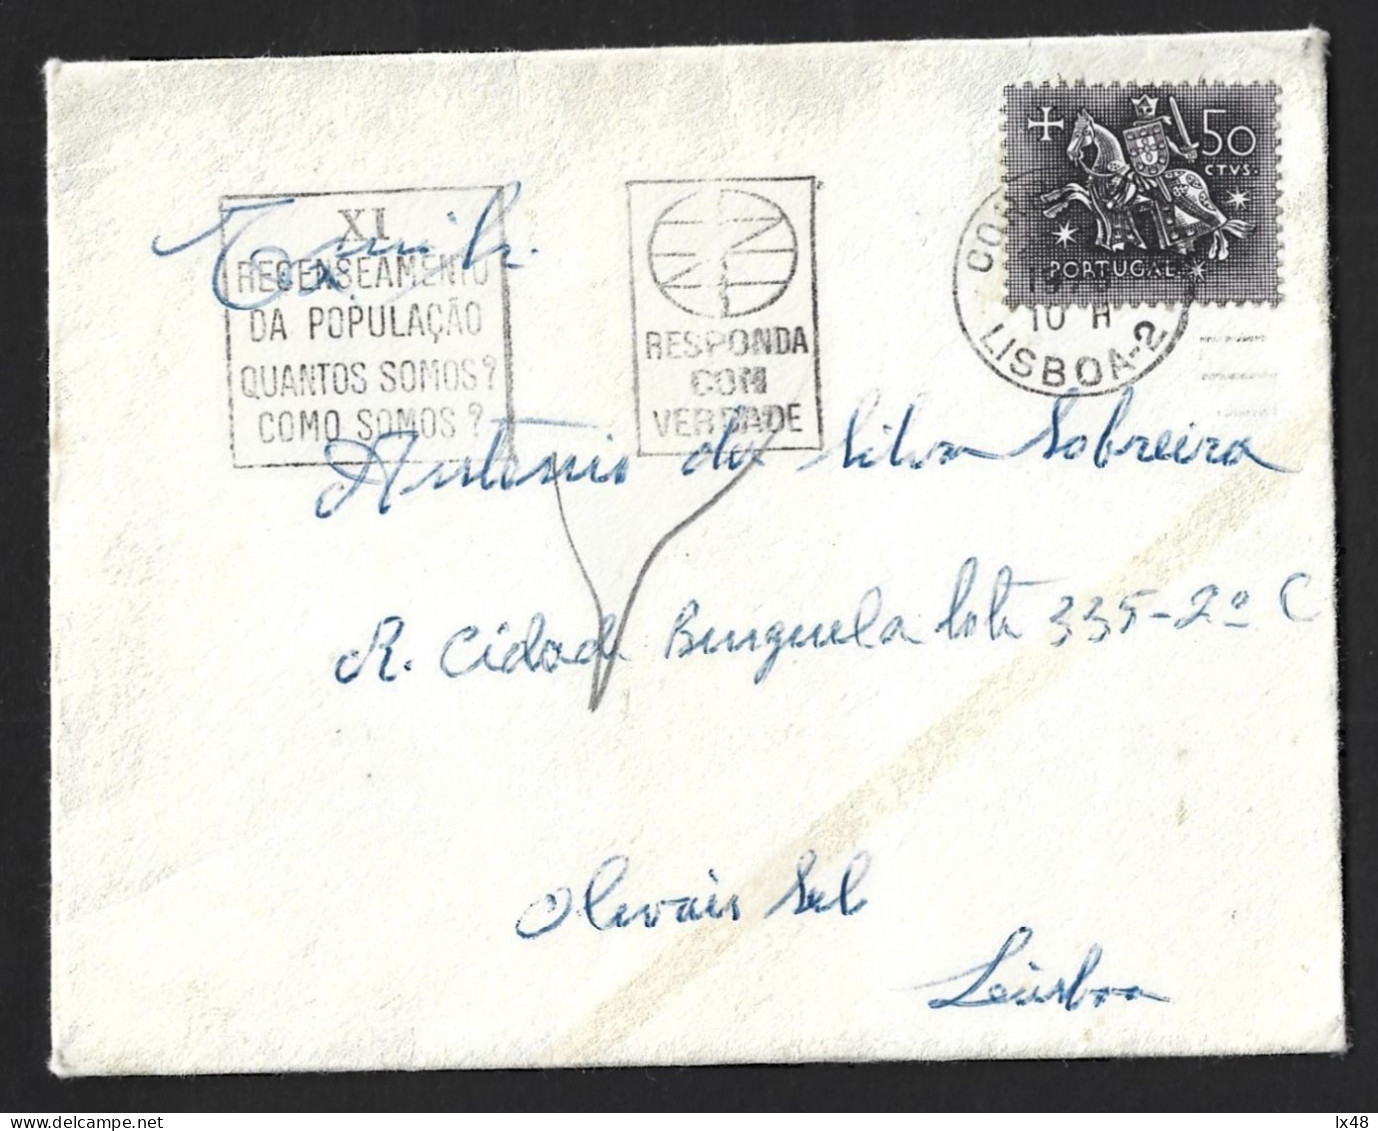 Último Recenseamento Eleitoral De Salazar 1970. Flâmula IX Recenseamento Do Estado Novo, Portugal. Salazar's Last Electo - Cartas & Documentos